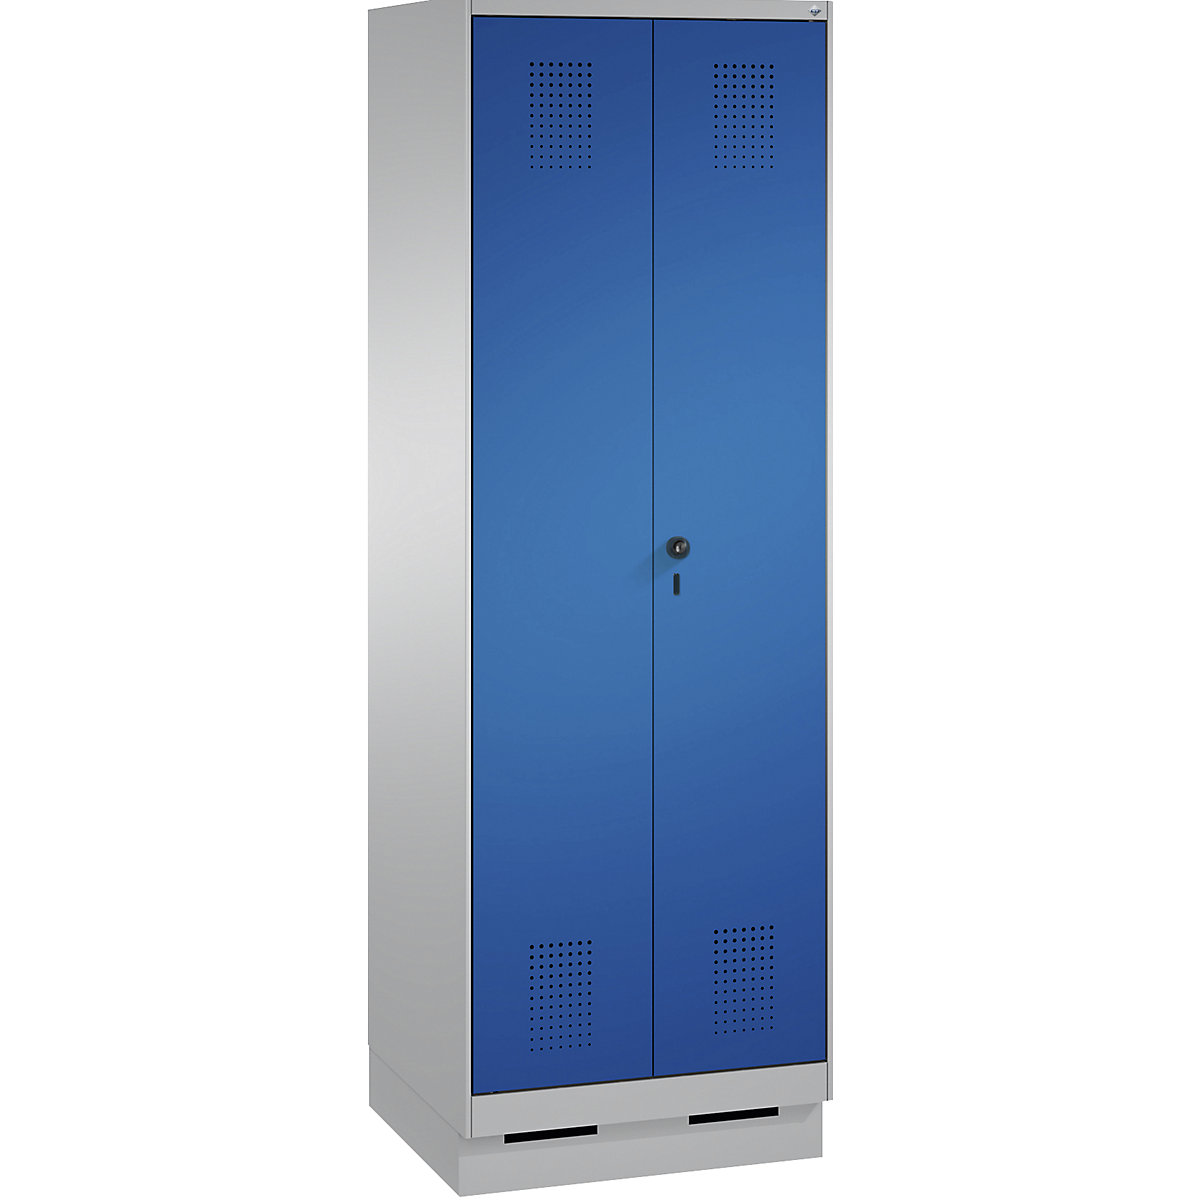 Úklidová/přístrojová skříň EVOLO – C+P, zkrácená dělicí stěna, 6 háků, oddíly 2 x 300 mm, se soklem, bílý hliník / enciánová modrá-13